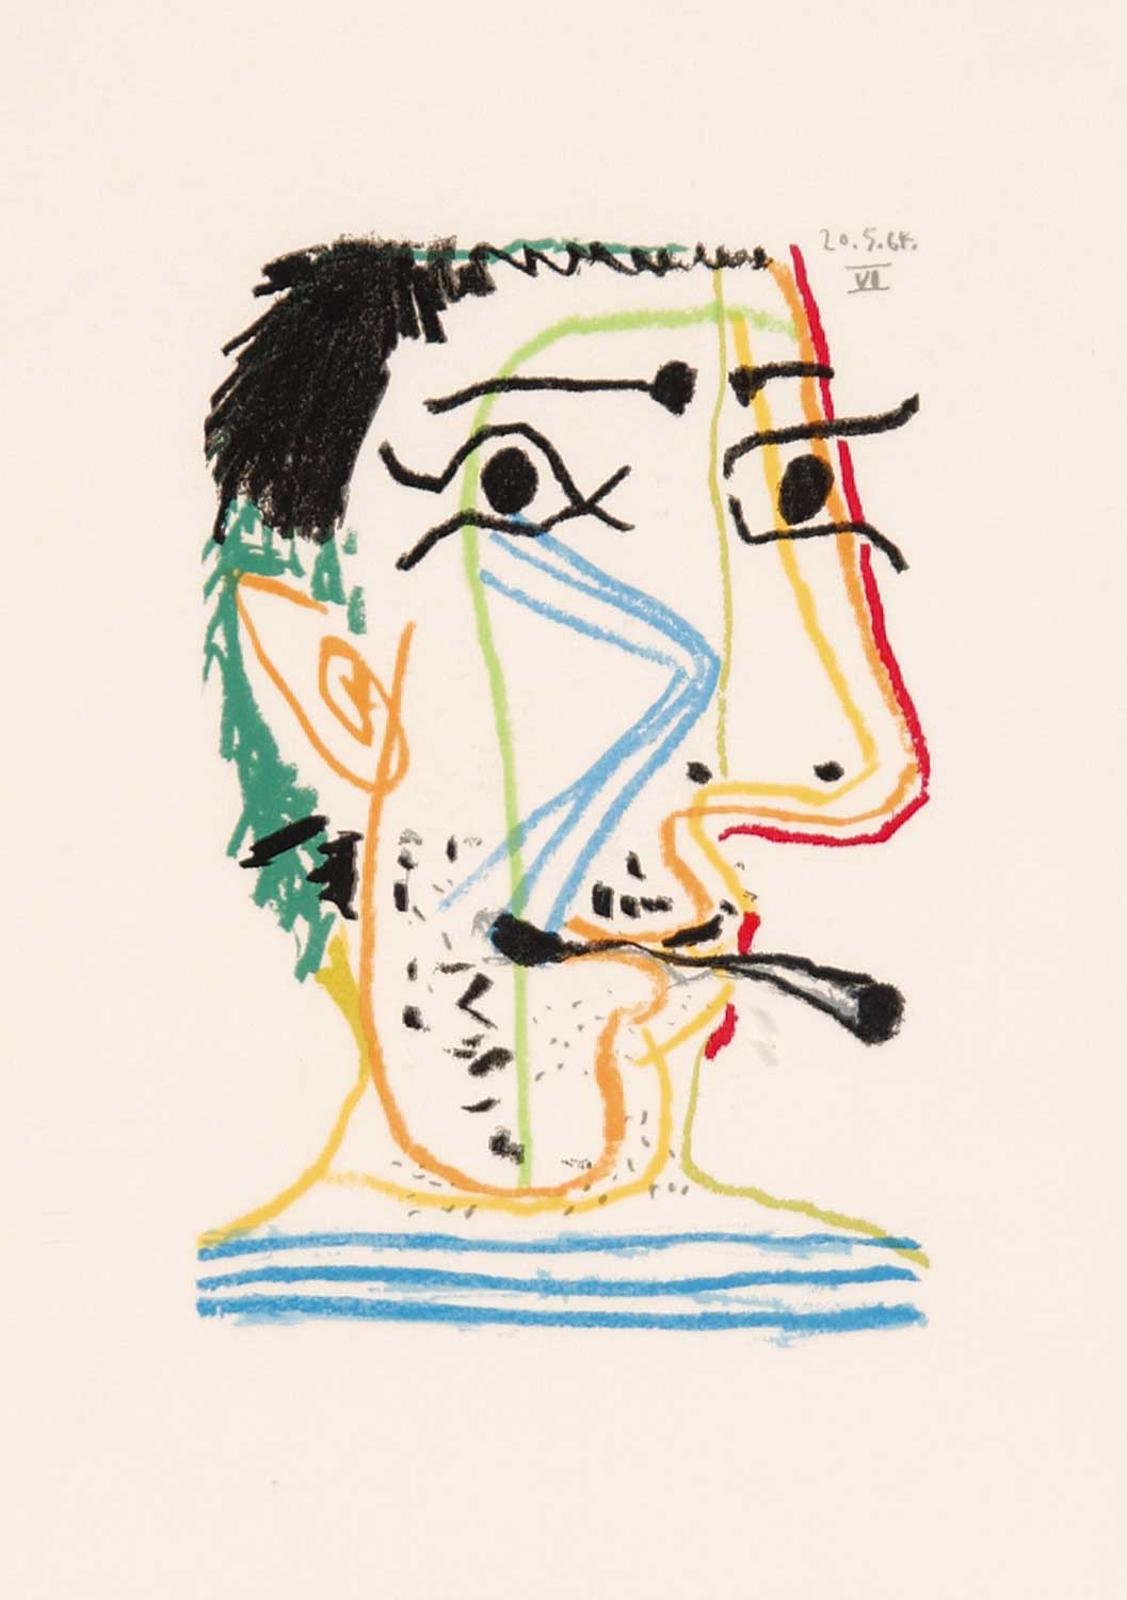 Pablo Ruiz Picasso (1881-1973) - Untitled - Portrait 16.5.64.VI